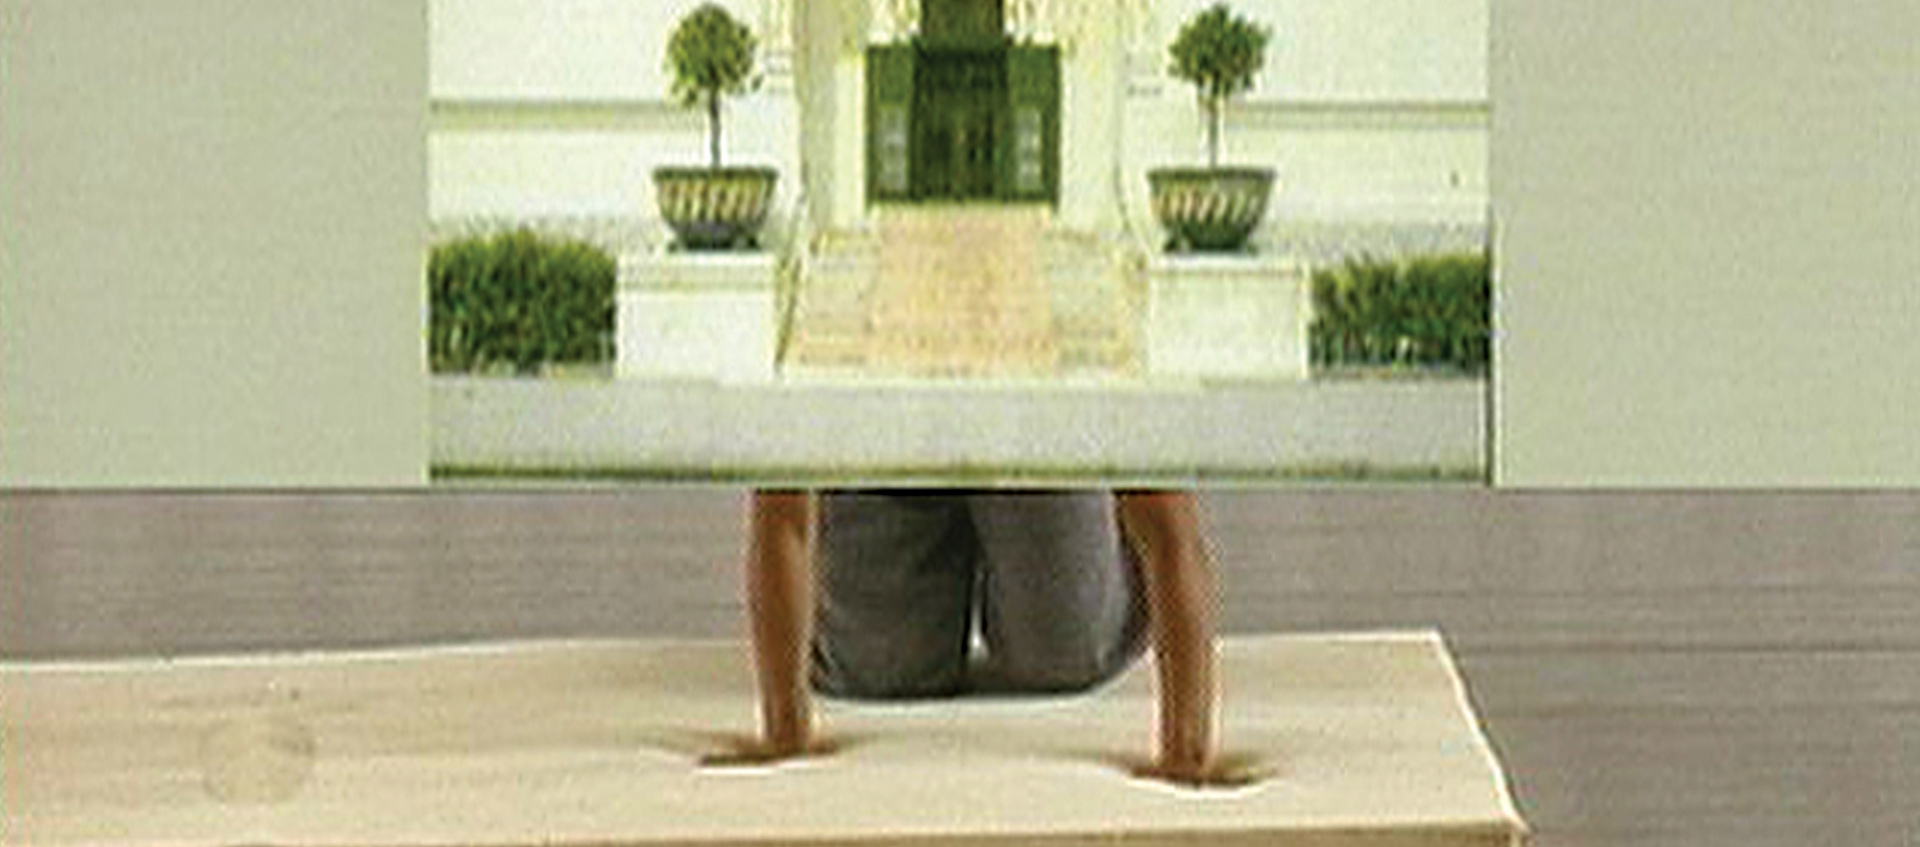 Person kneels behind screen